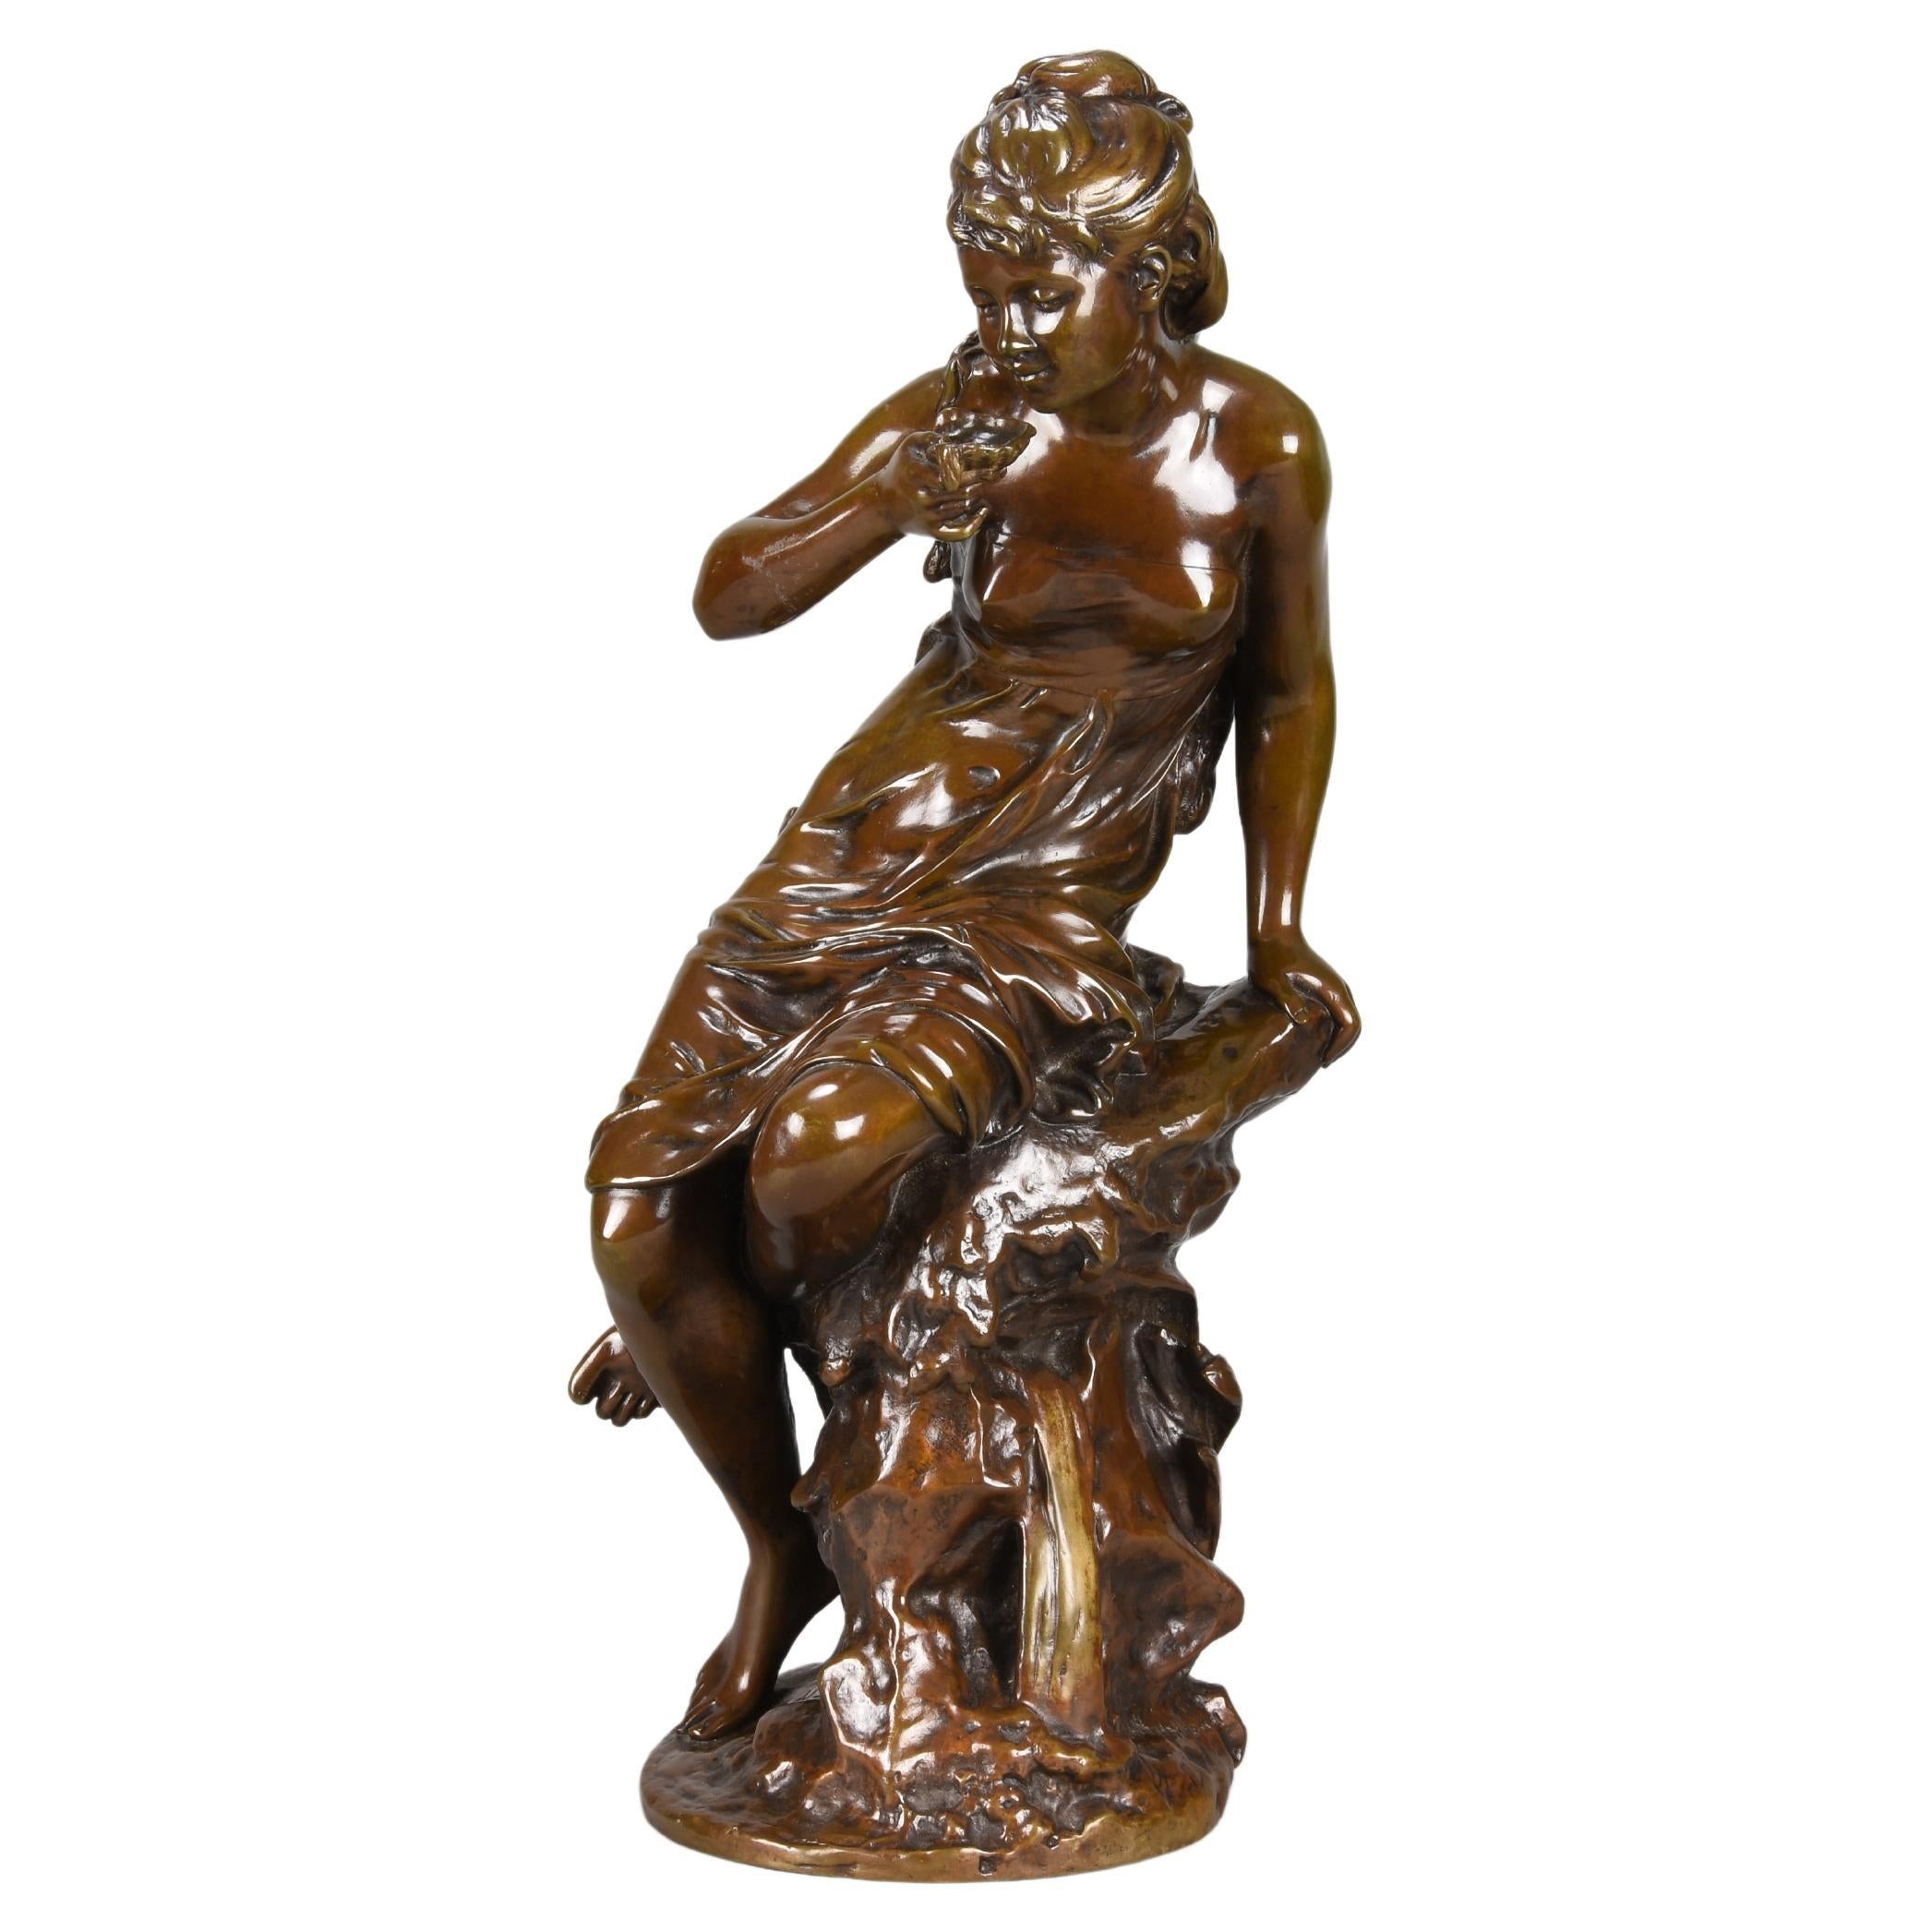 Late-19th Century Art Nouveau Bronze Entitled "La Source” by Mathurin Moreau